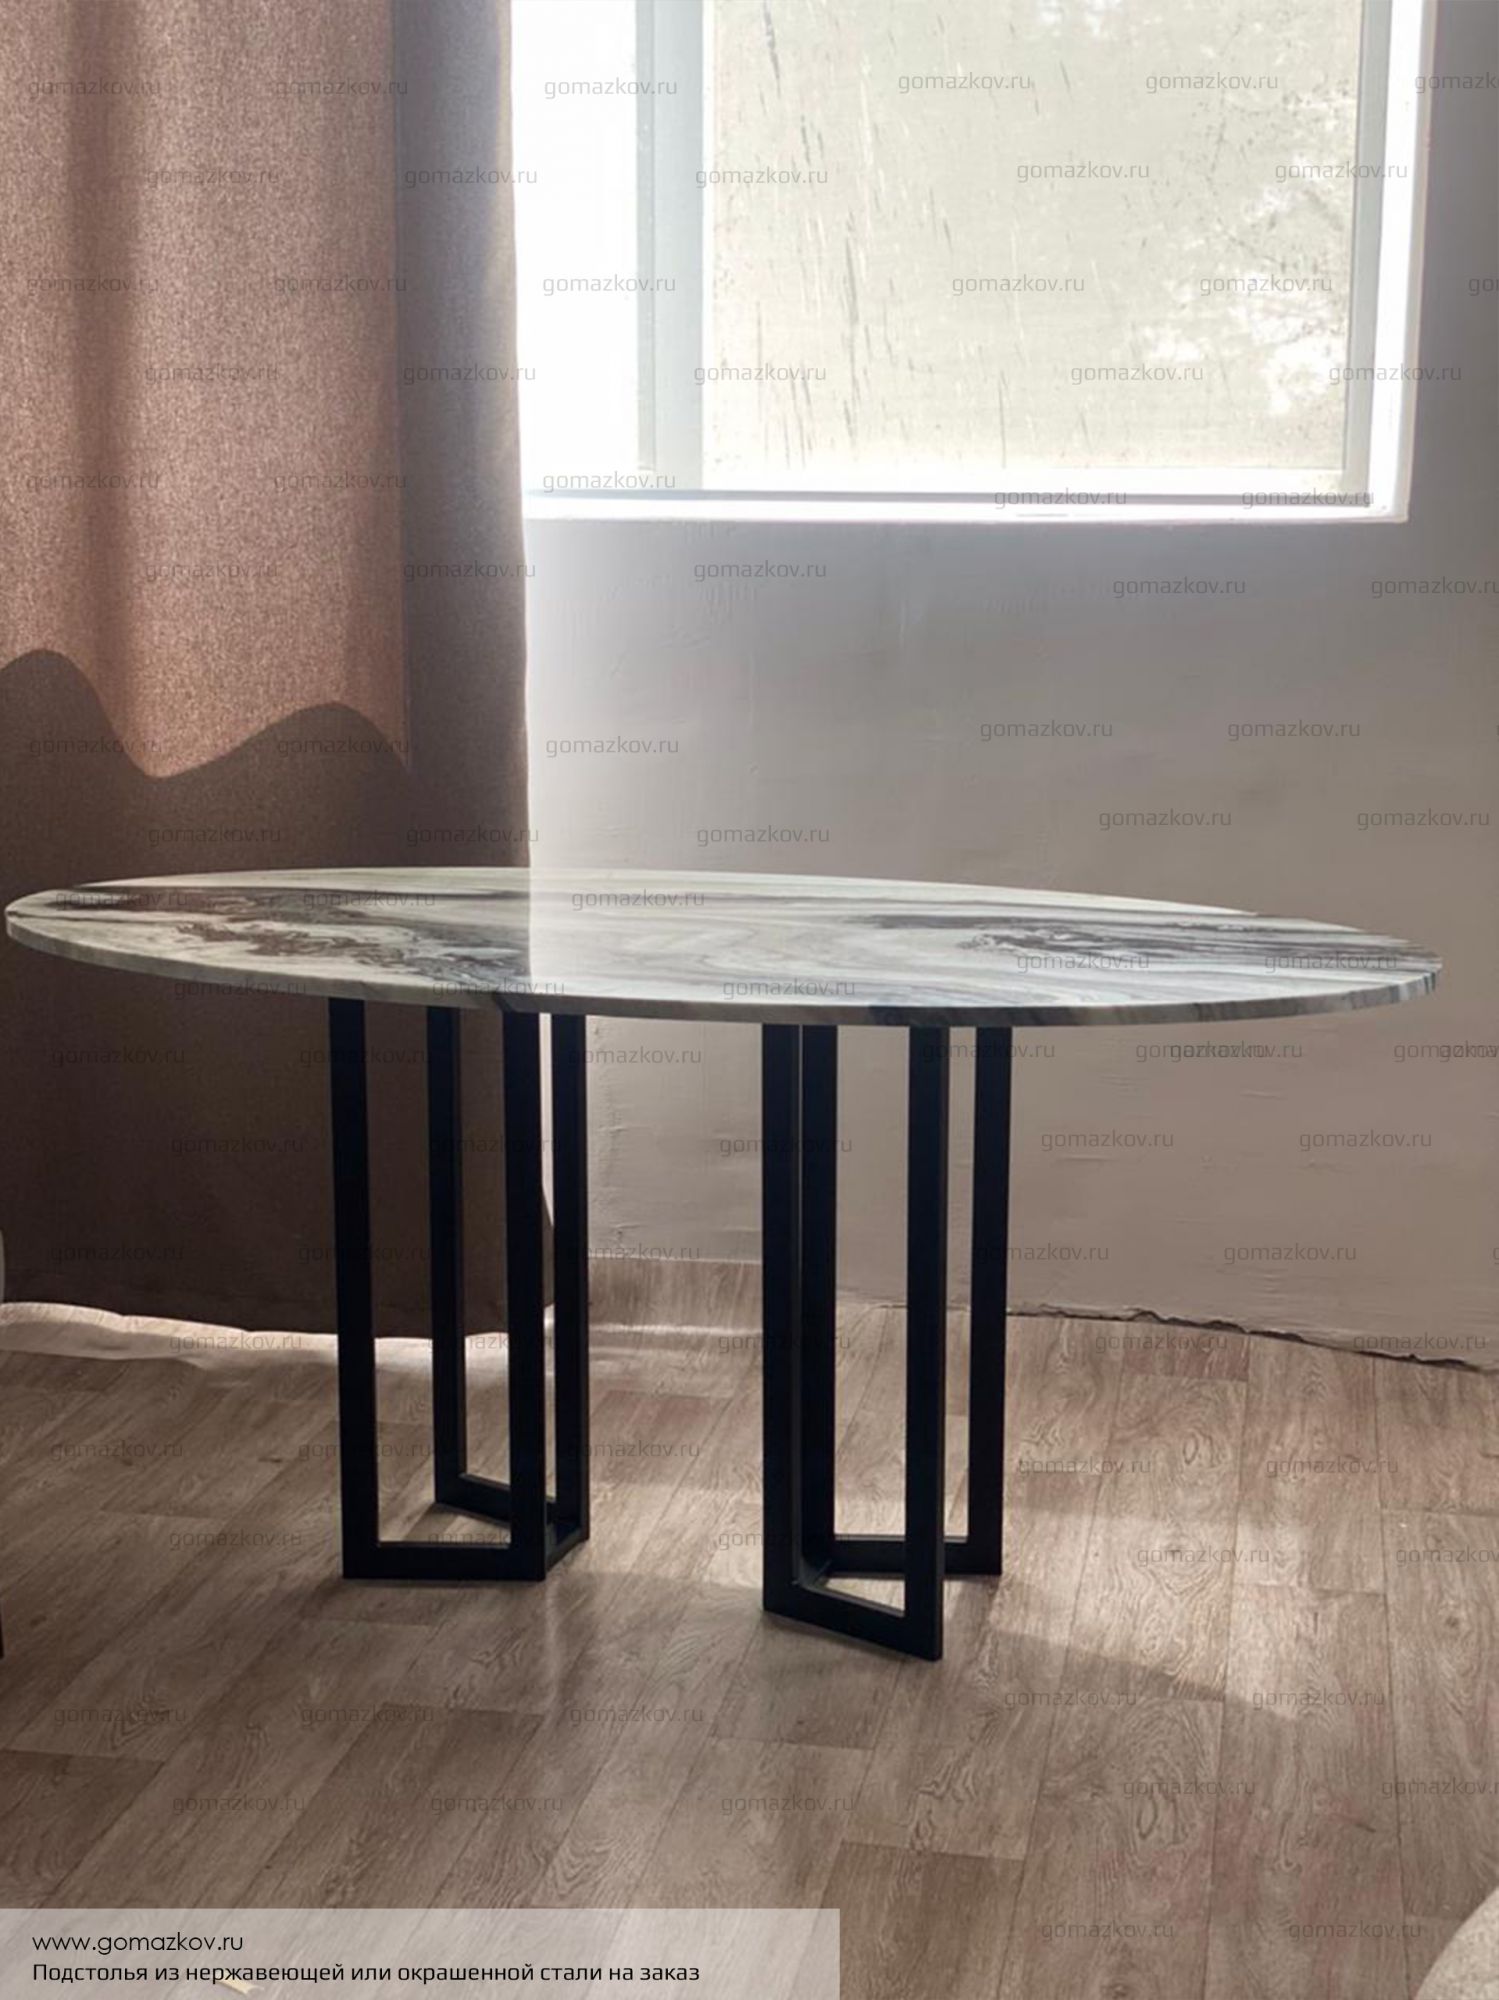 Журнальный столик, подстолье из стали и столешница из натурального камня, под заказ в Волжском